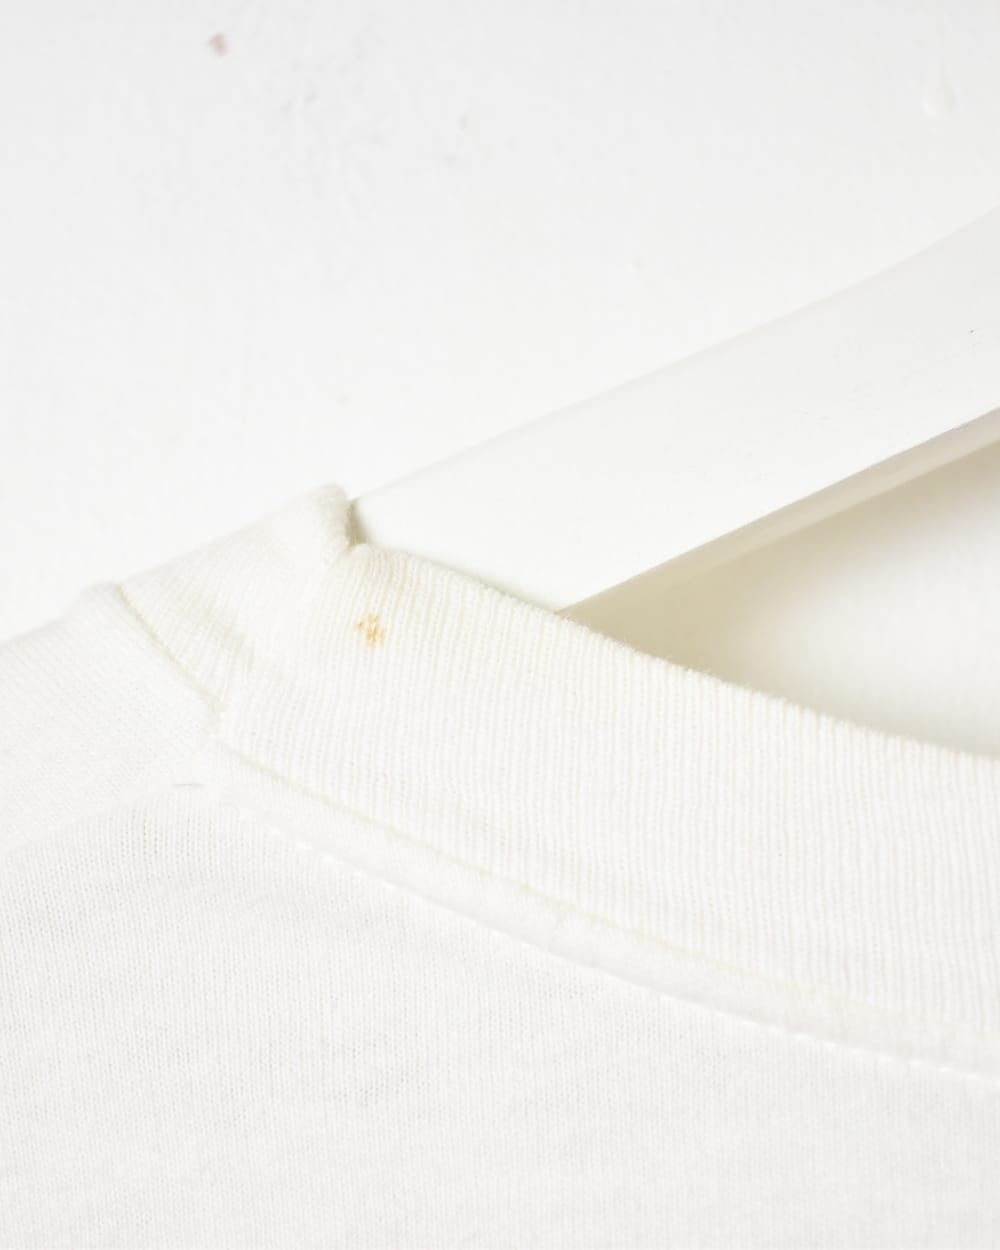 White An Ideal Husband Single Stitch T-Shirt - X-Large